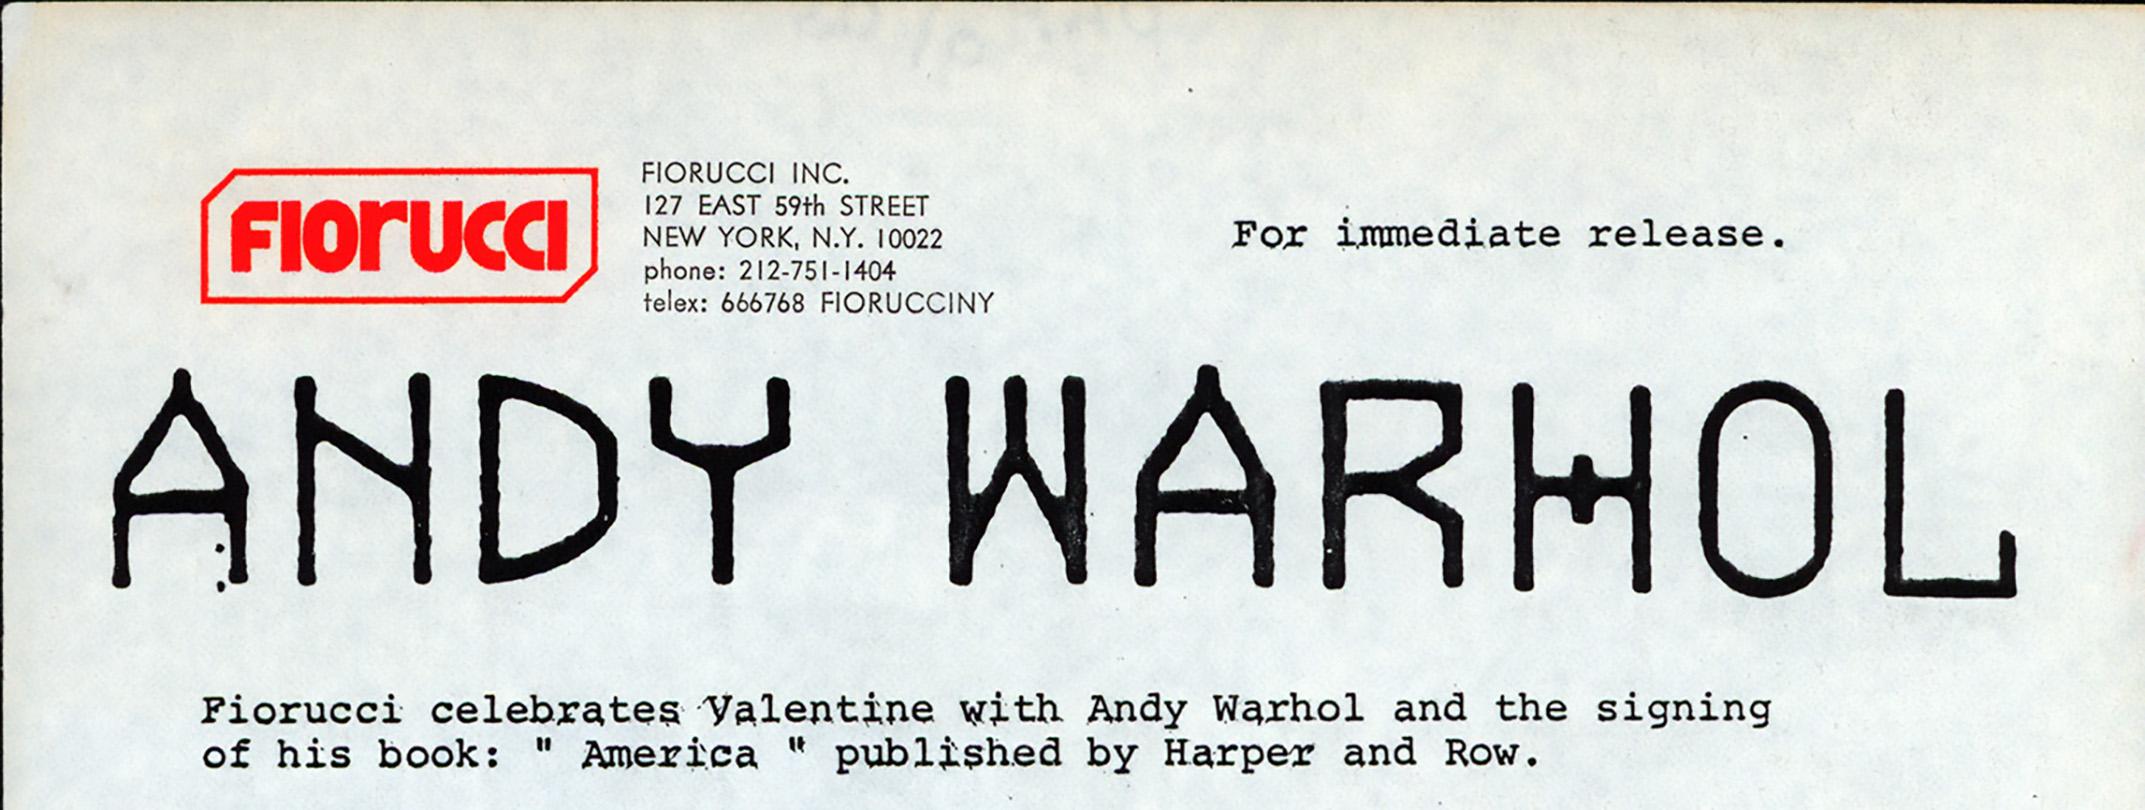 Andy Warhol "America" Communiqué de presse de Fiorucci 1986 :
Communiqué de presse original pour une séance de dédicaces d'Andy Warhol à l'occasion de la Saint-Valentin en 1986, dans la légendaire institution culturelle new-yorkaise : Fiorucci. Un